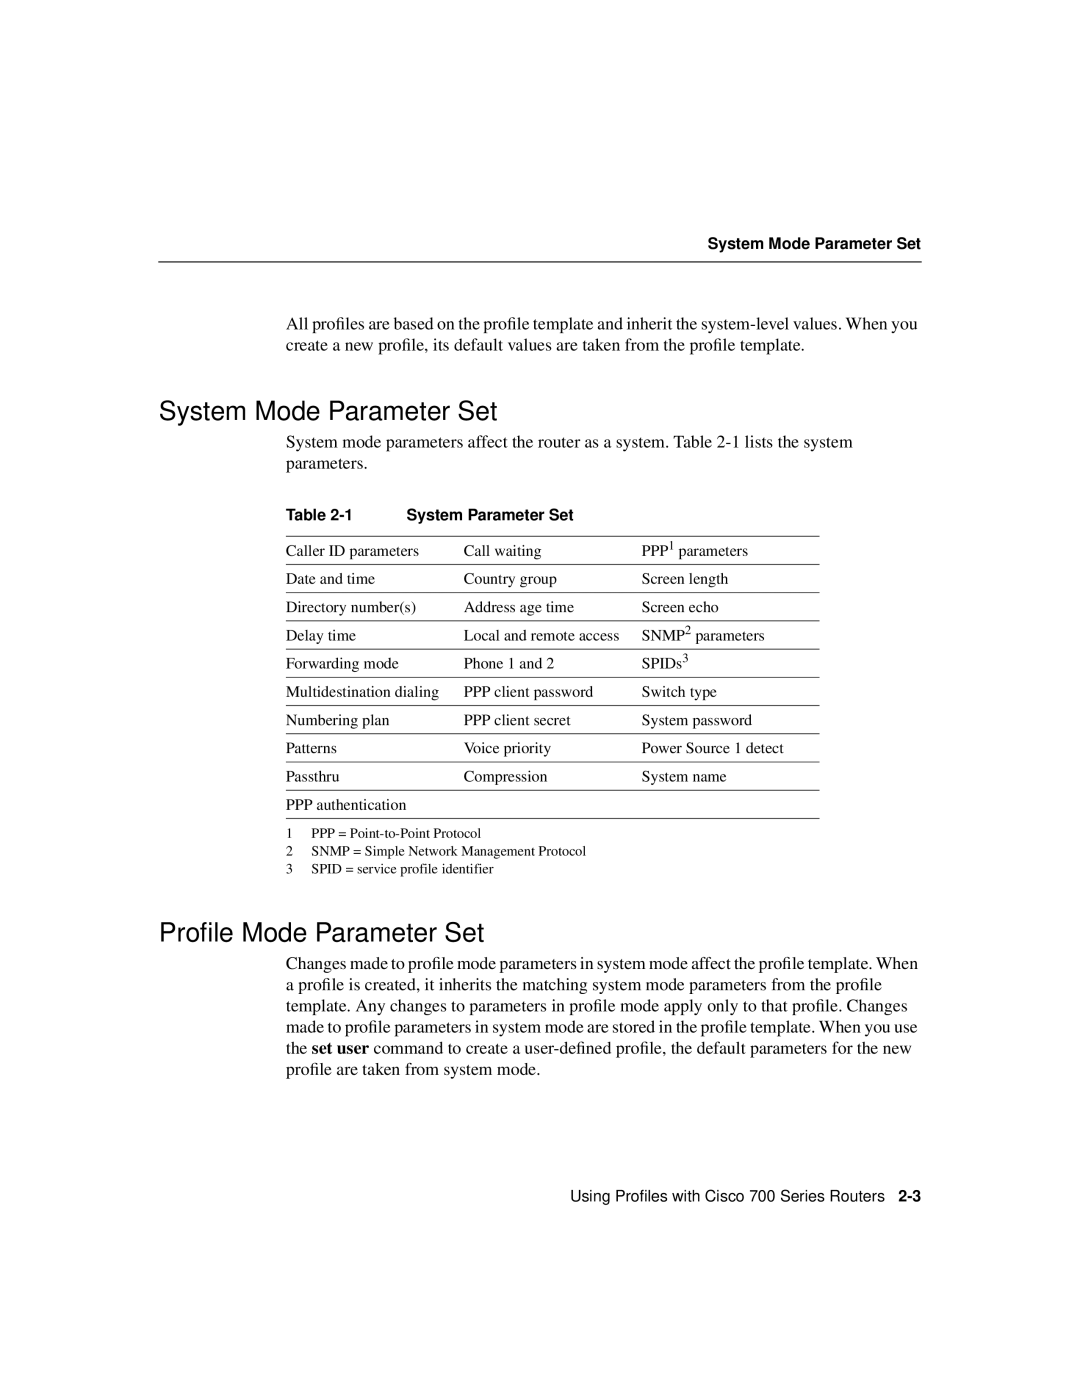 Cisco Systems 700 manual System Mode Parameter Set, Proﬁle Mode Parameter Set, System Parameter Set 